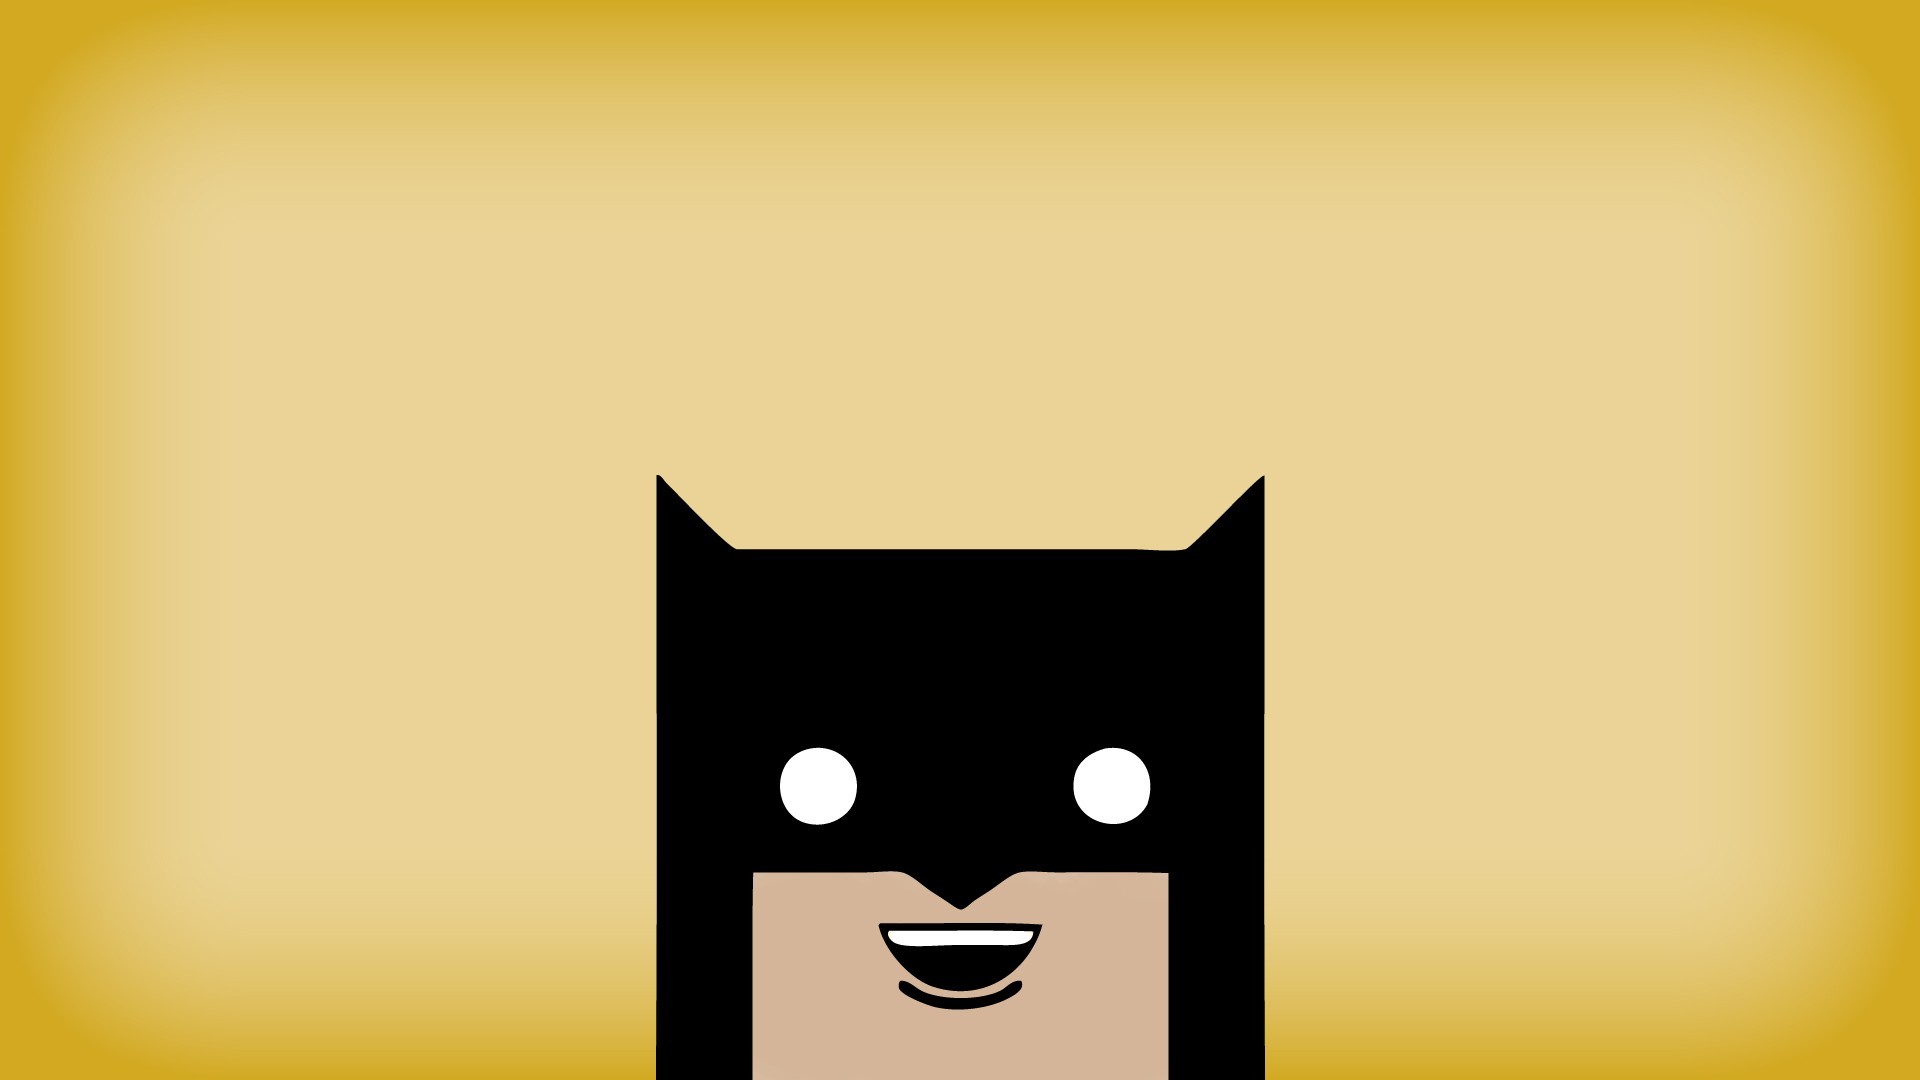 1920x1080 Marvel Minimalist Wallpaper 1334112123263 | Design - Poster ...  Minimalistic  Batman ...